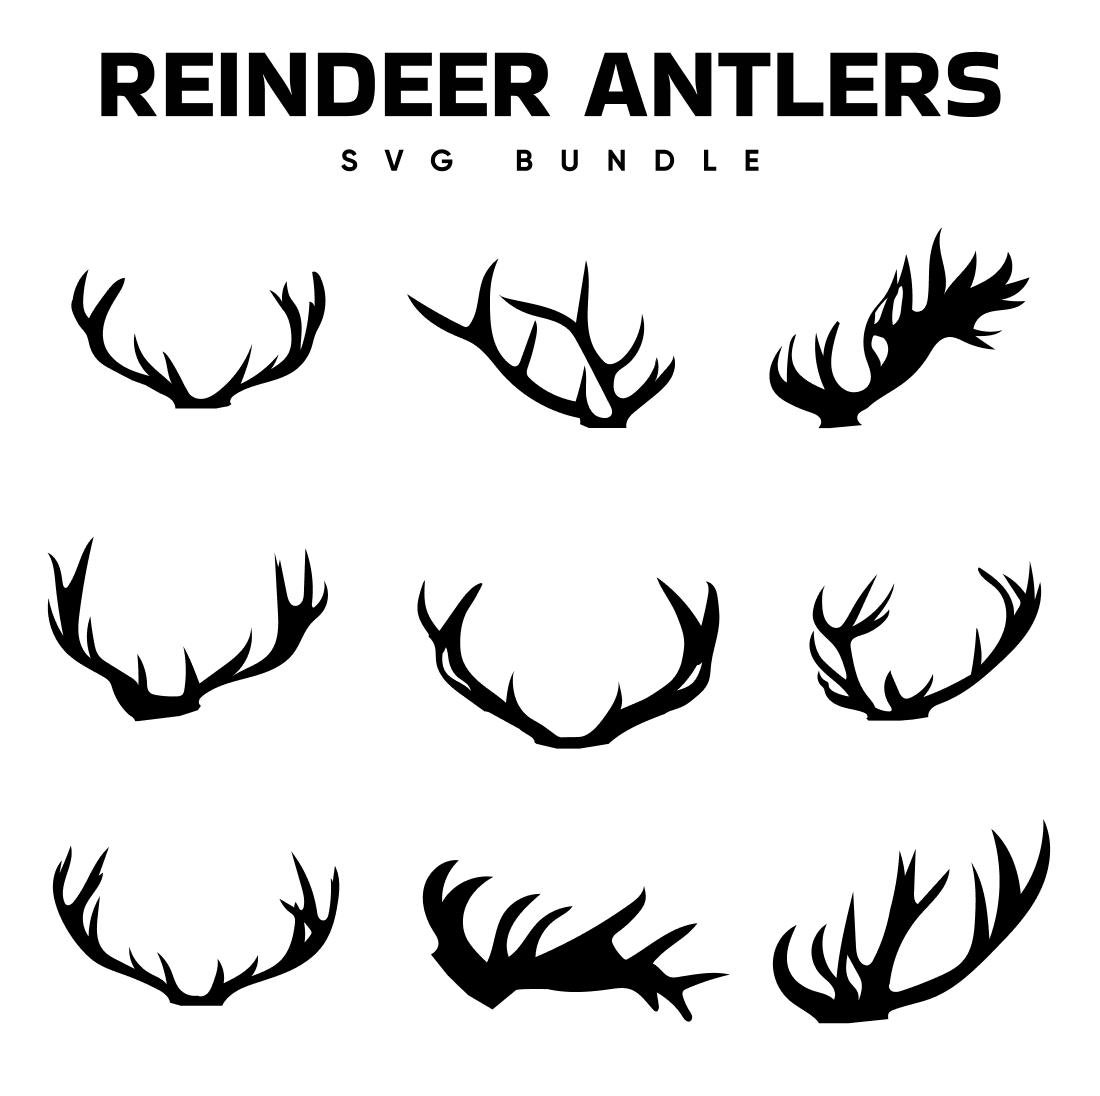 Reindeer antlers svg bundle.